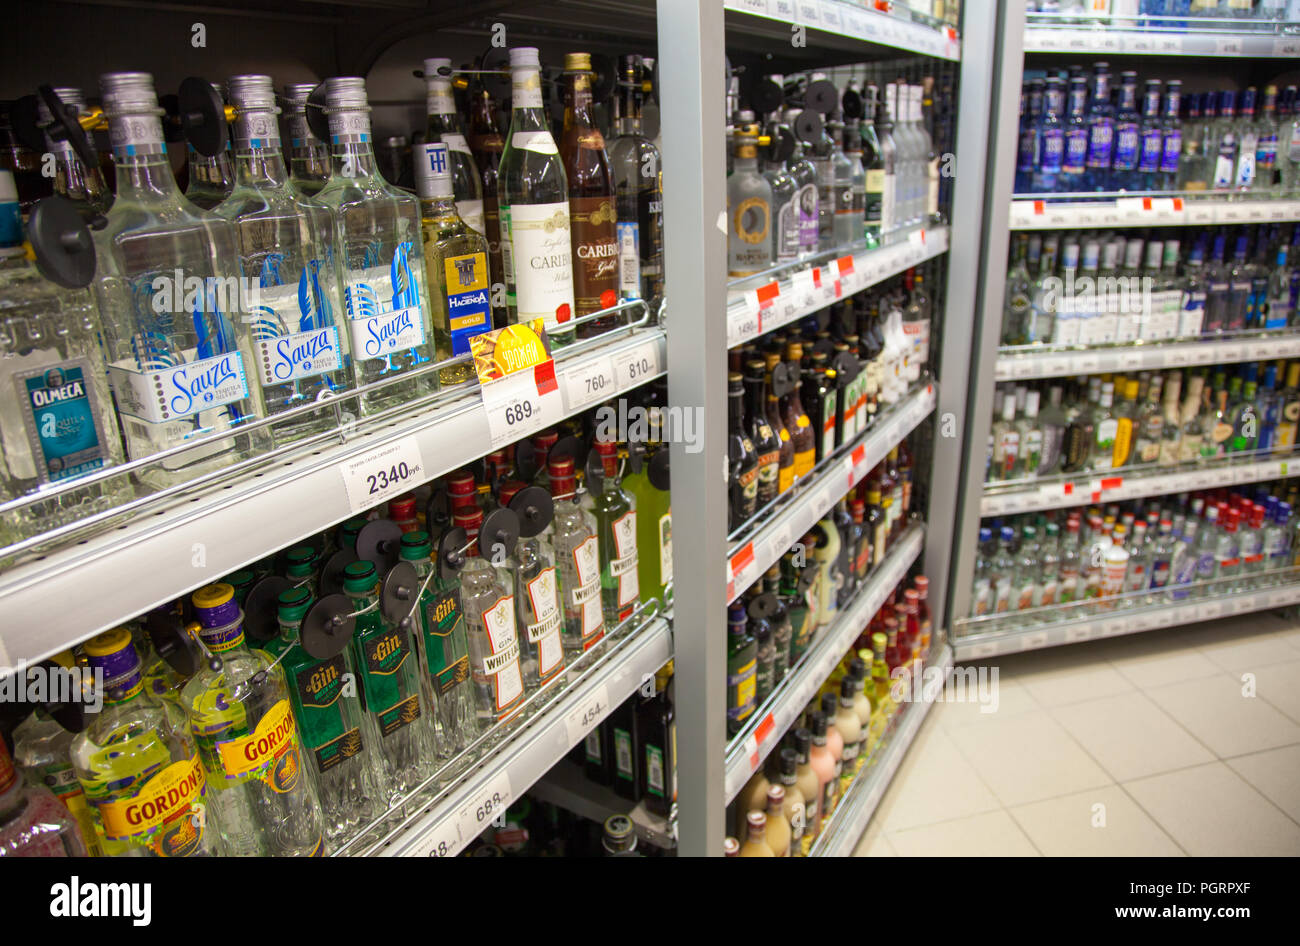 Kaliningrad, Russia - 25 agosto 2018: scaffali del supermercato con bevande alcoliche. Foto Stock